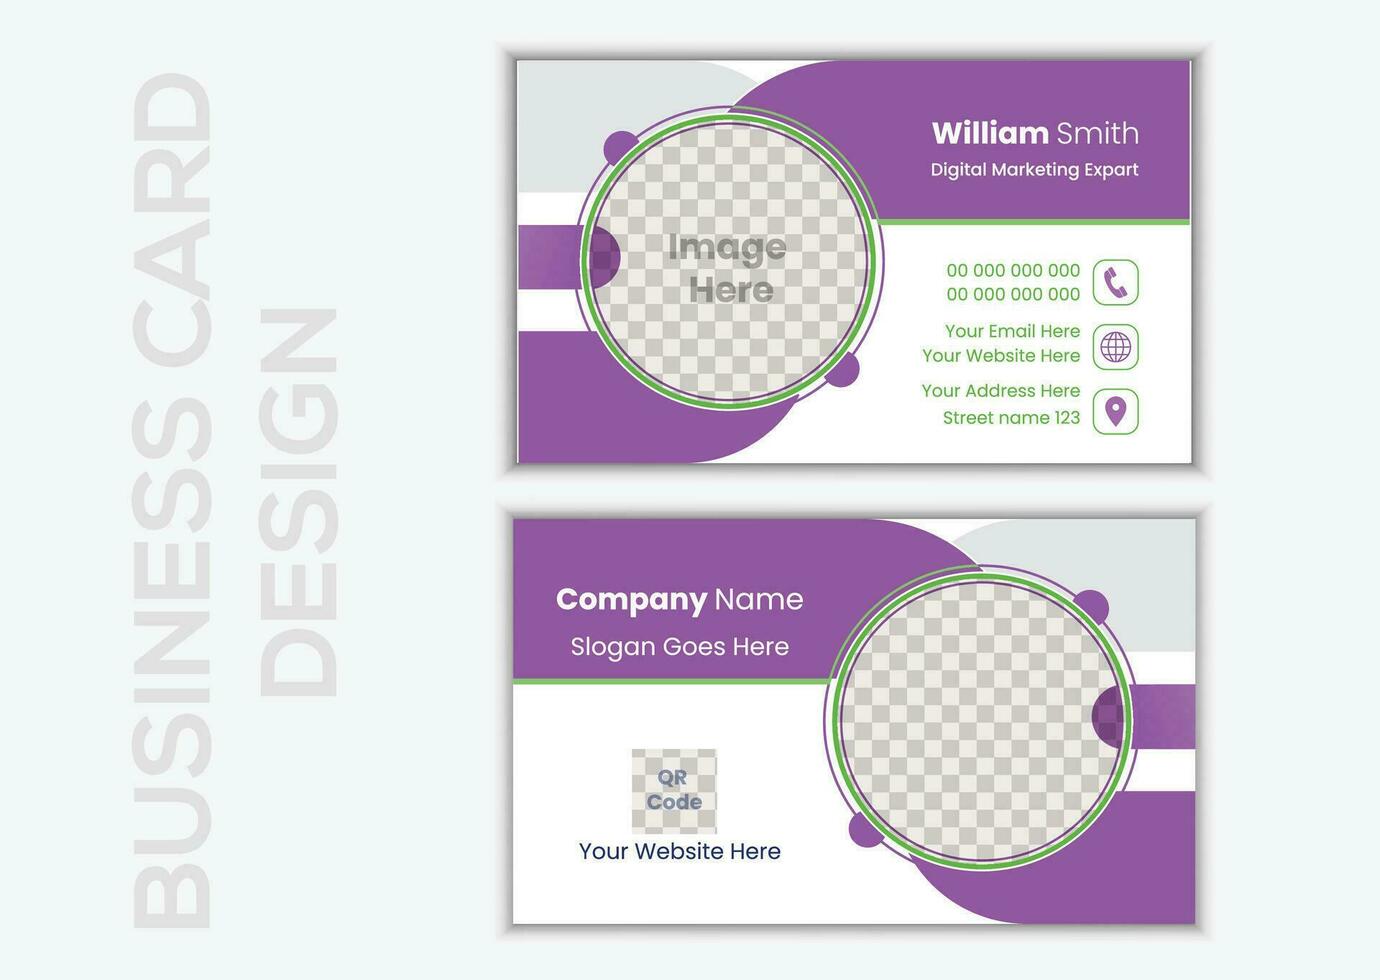 creativo negocio tarjeta. creativo y limpiar negocio tarjeta modelo. moderno negocio tarjeta diseño vector